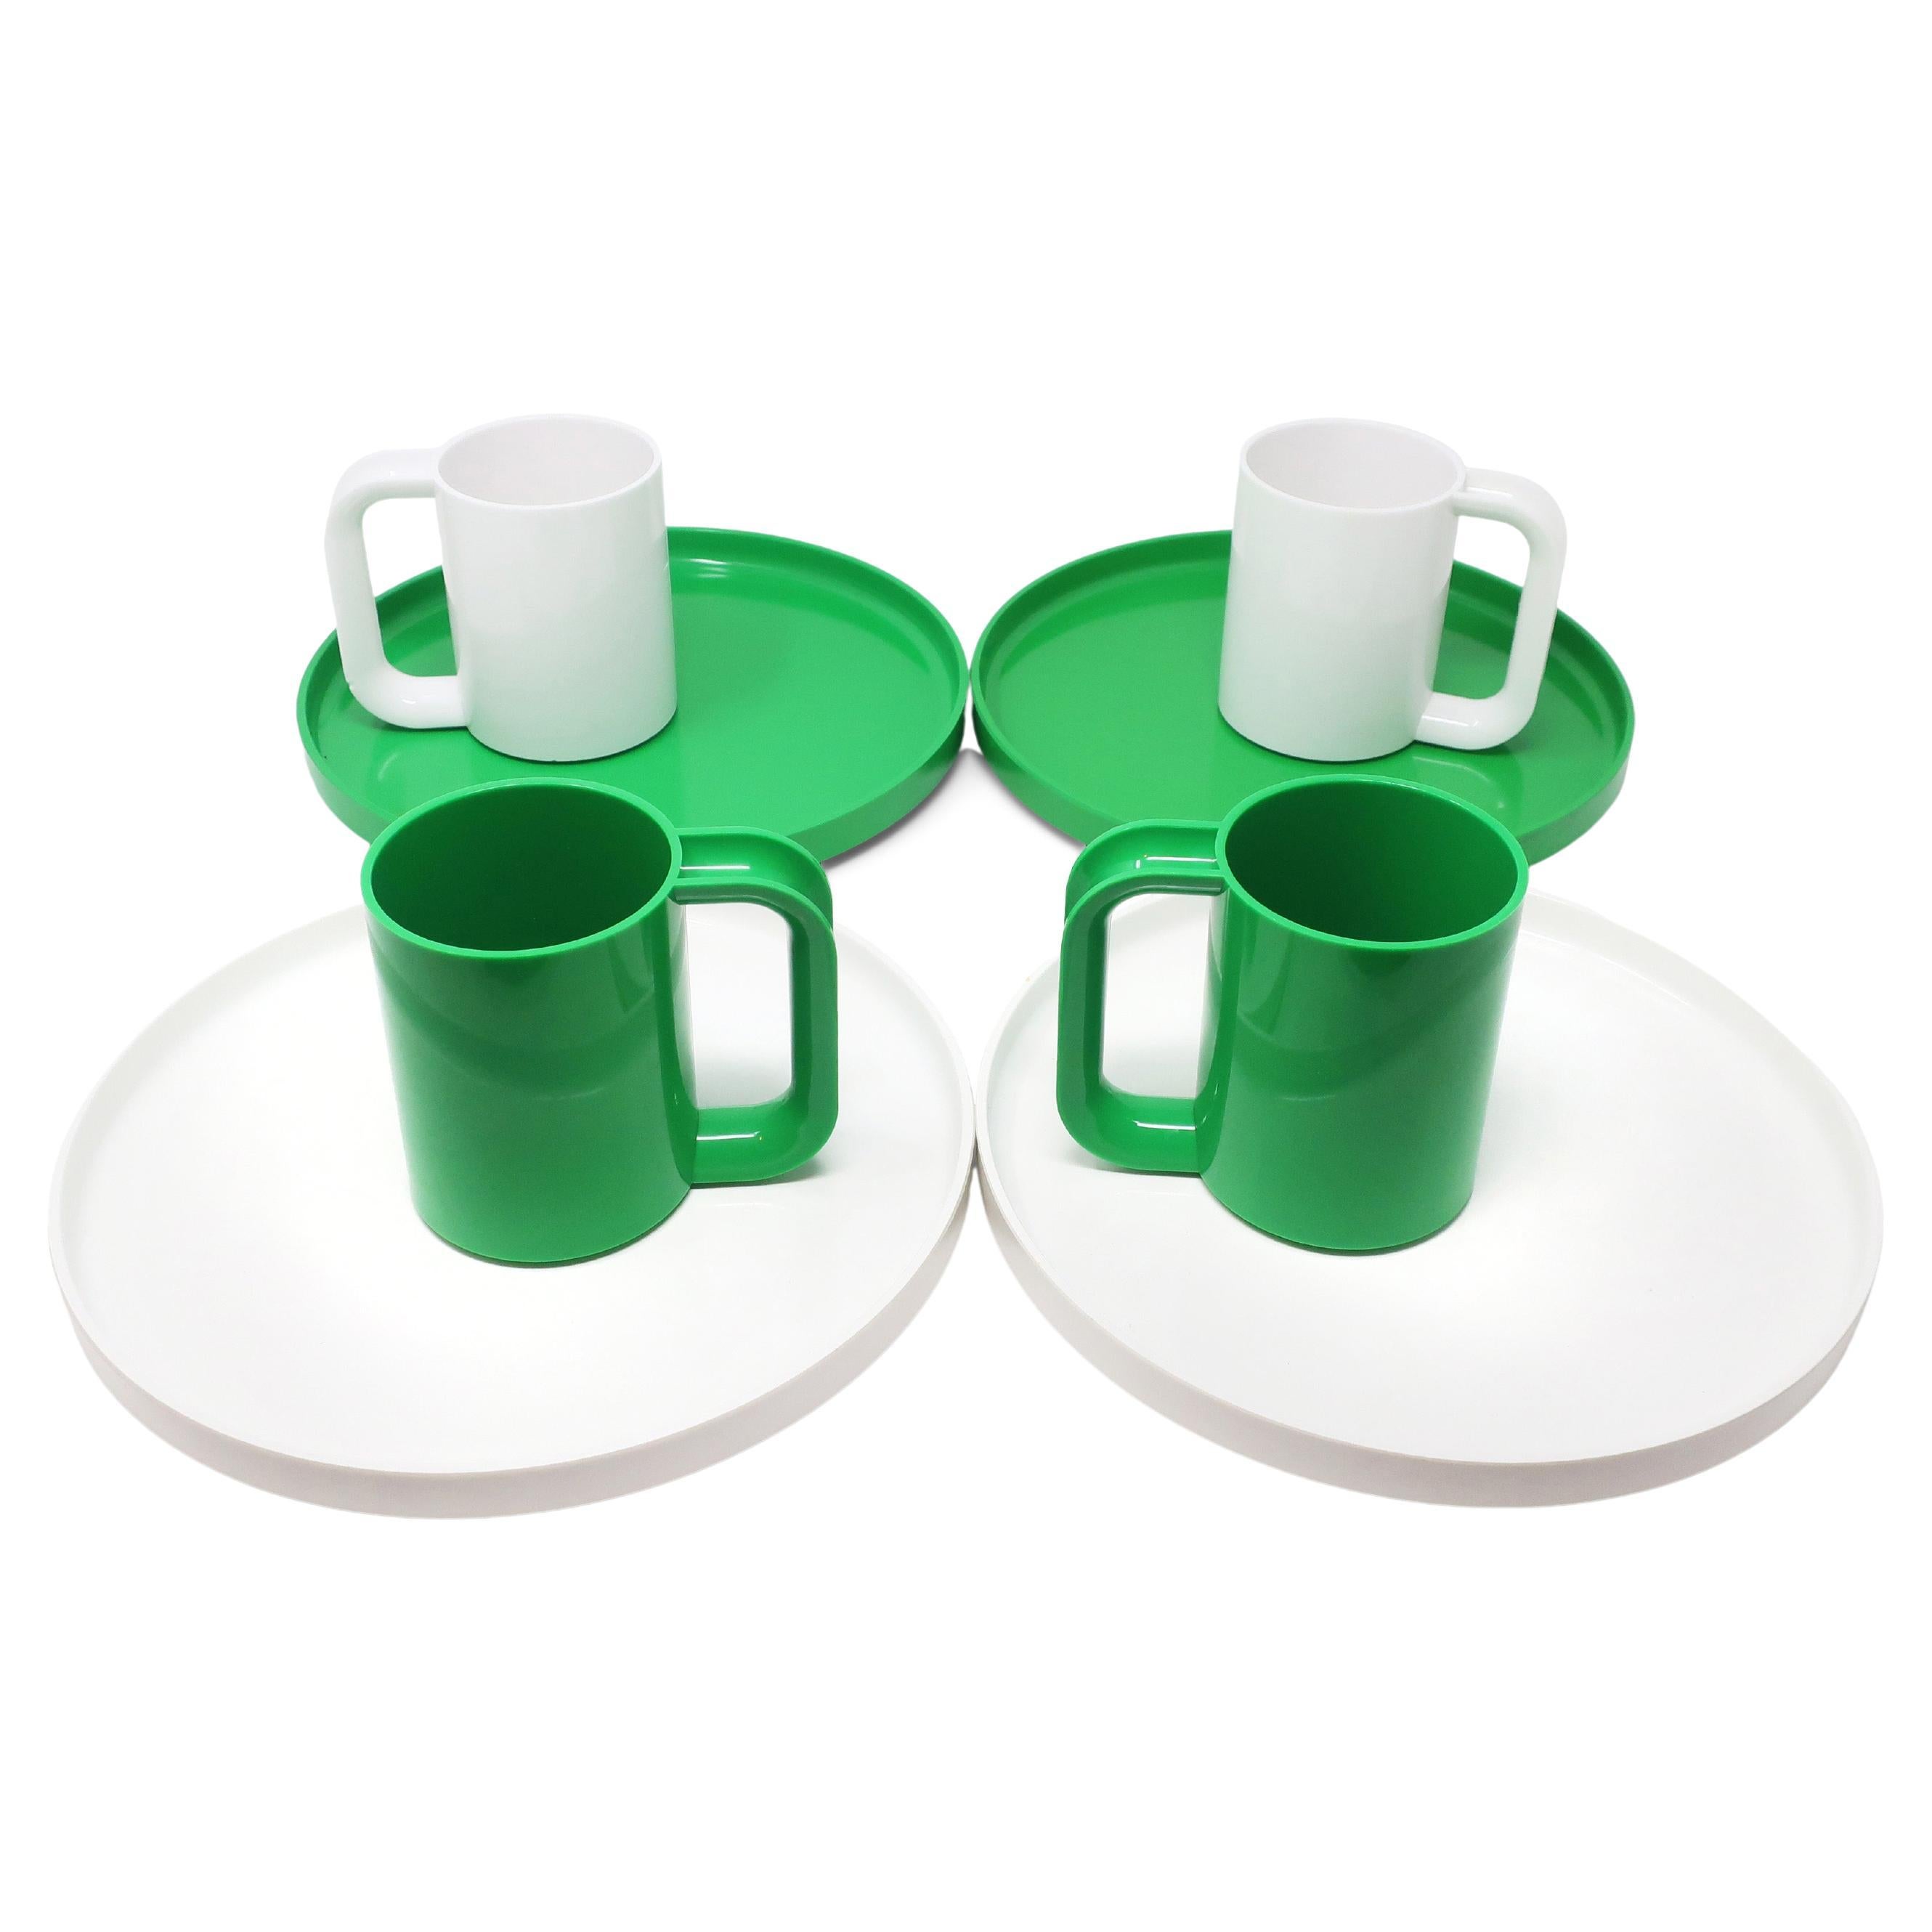 White & Green Dinnerware by Vignelli for Heller, Set of 8